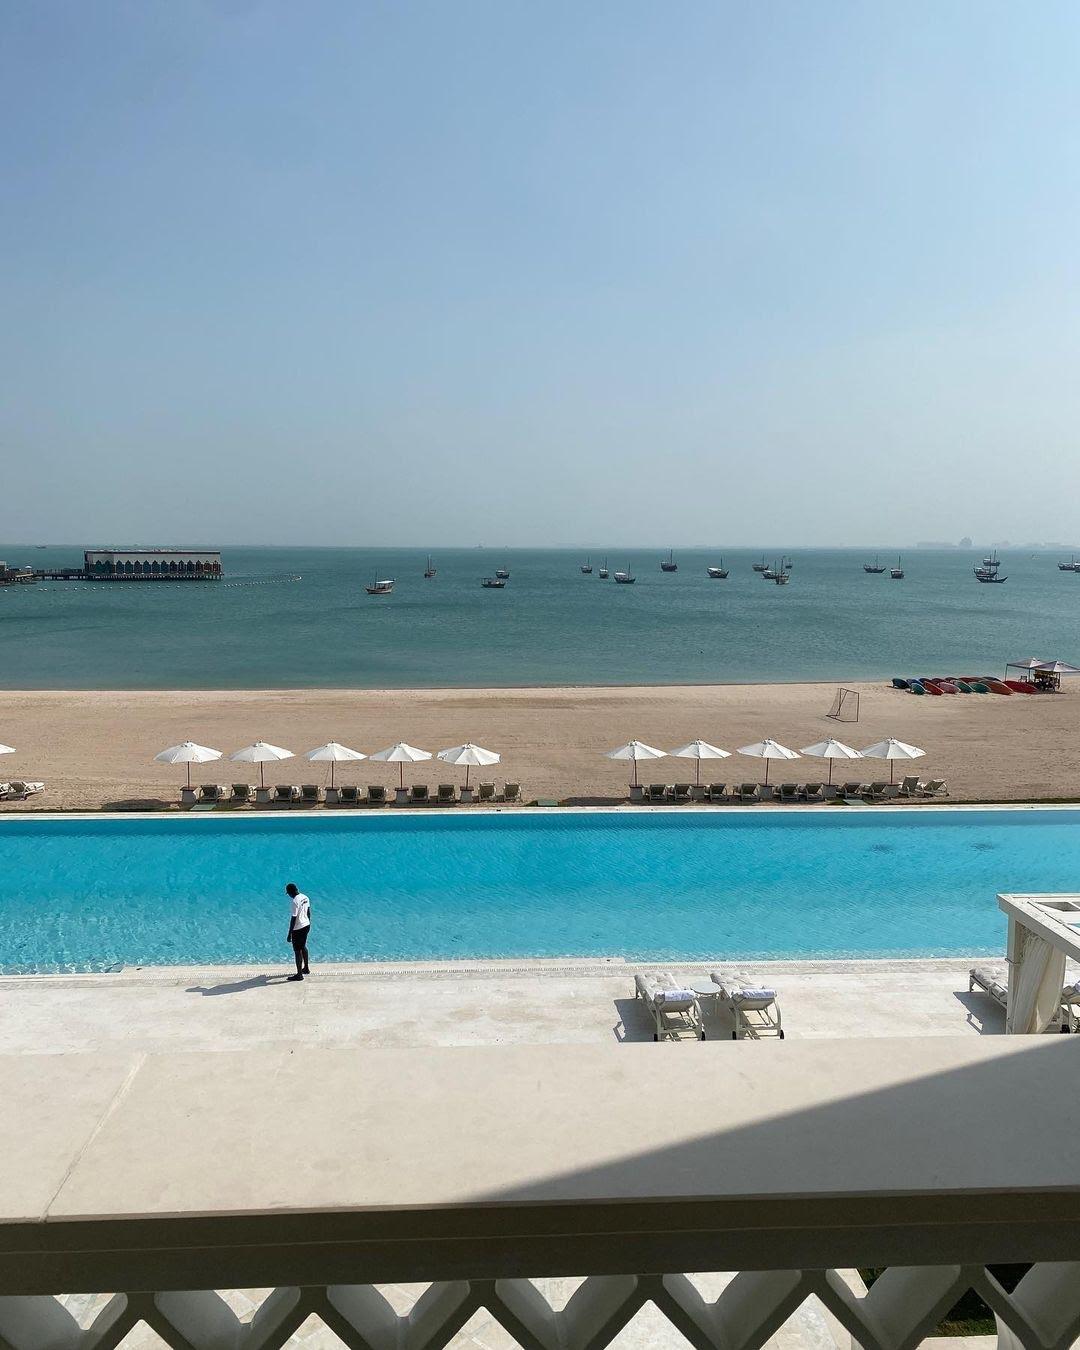 Khung cảnh tuyệt đẹp thể hiện một số cảnh đẹp nhất mà Qatar có, bao gồm các bãi biển và hồ bơi tư nhân nhìn ra đường chân trời của thành phố.